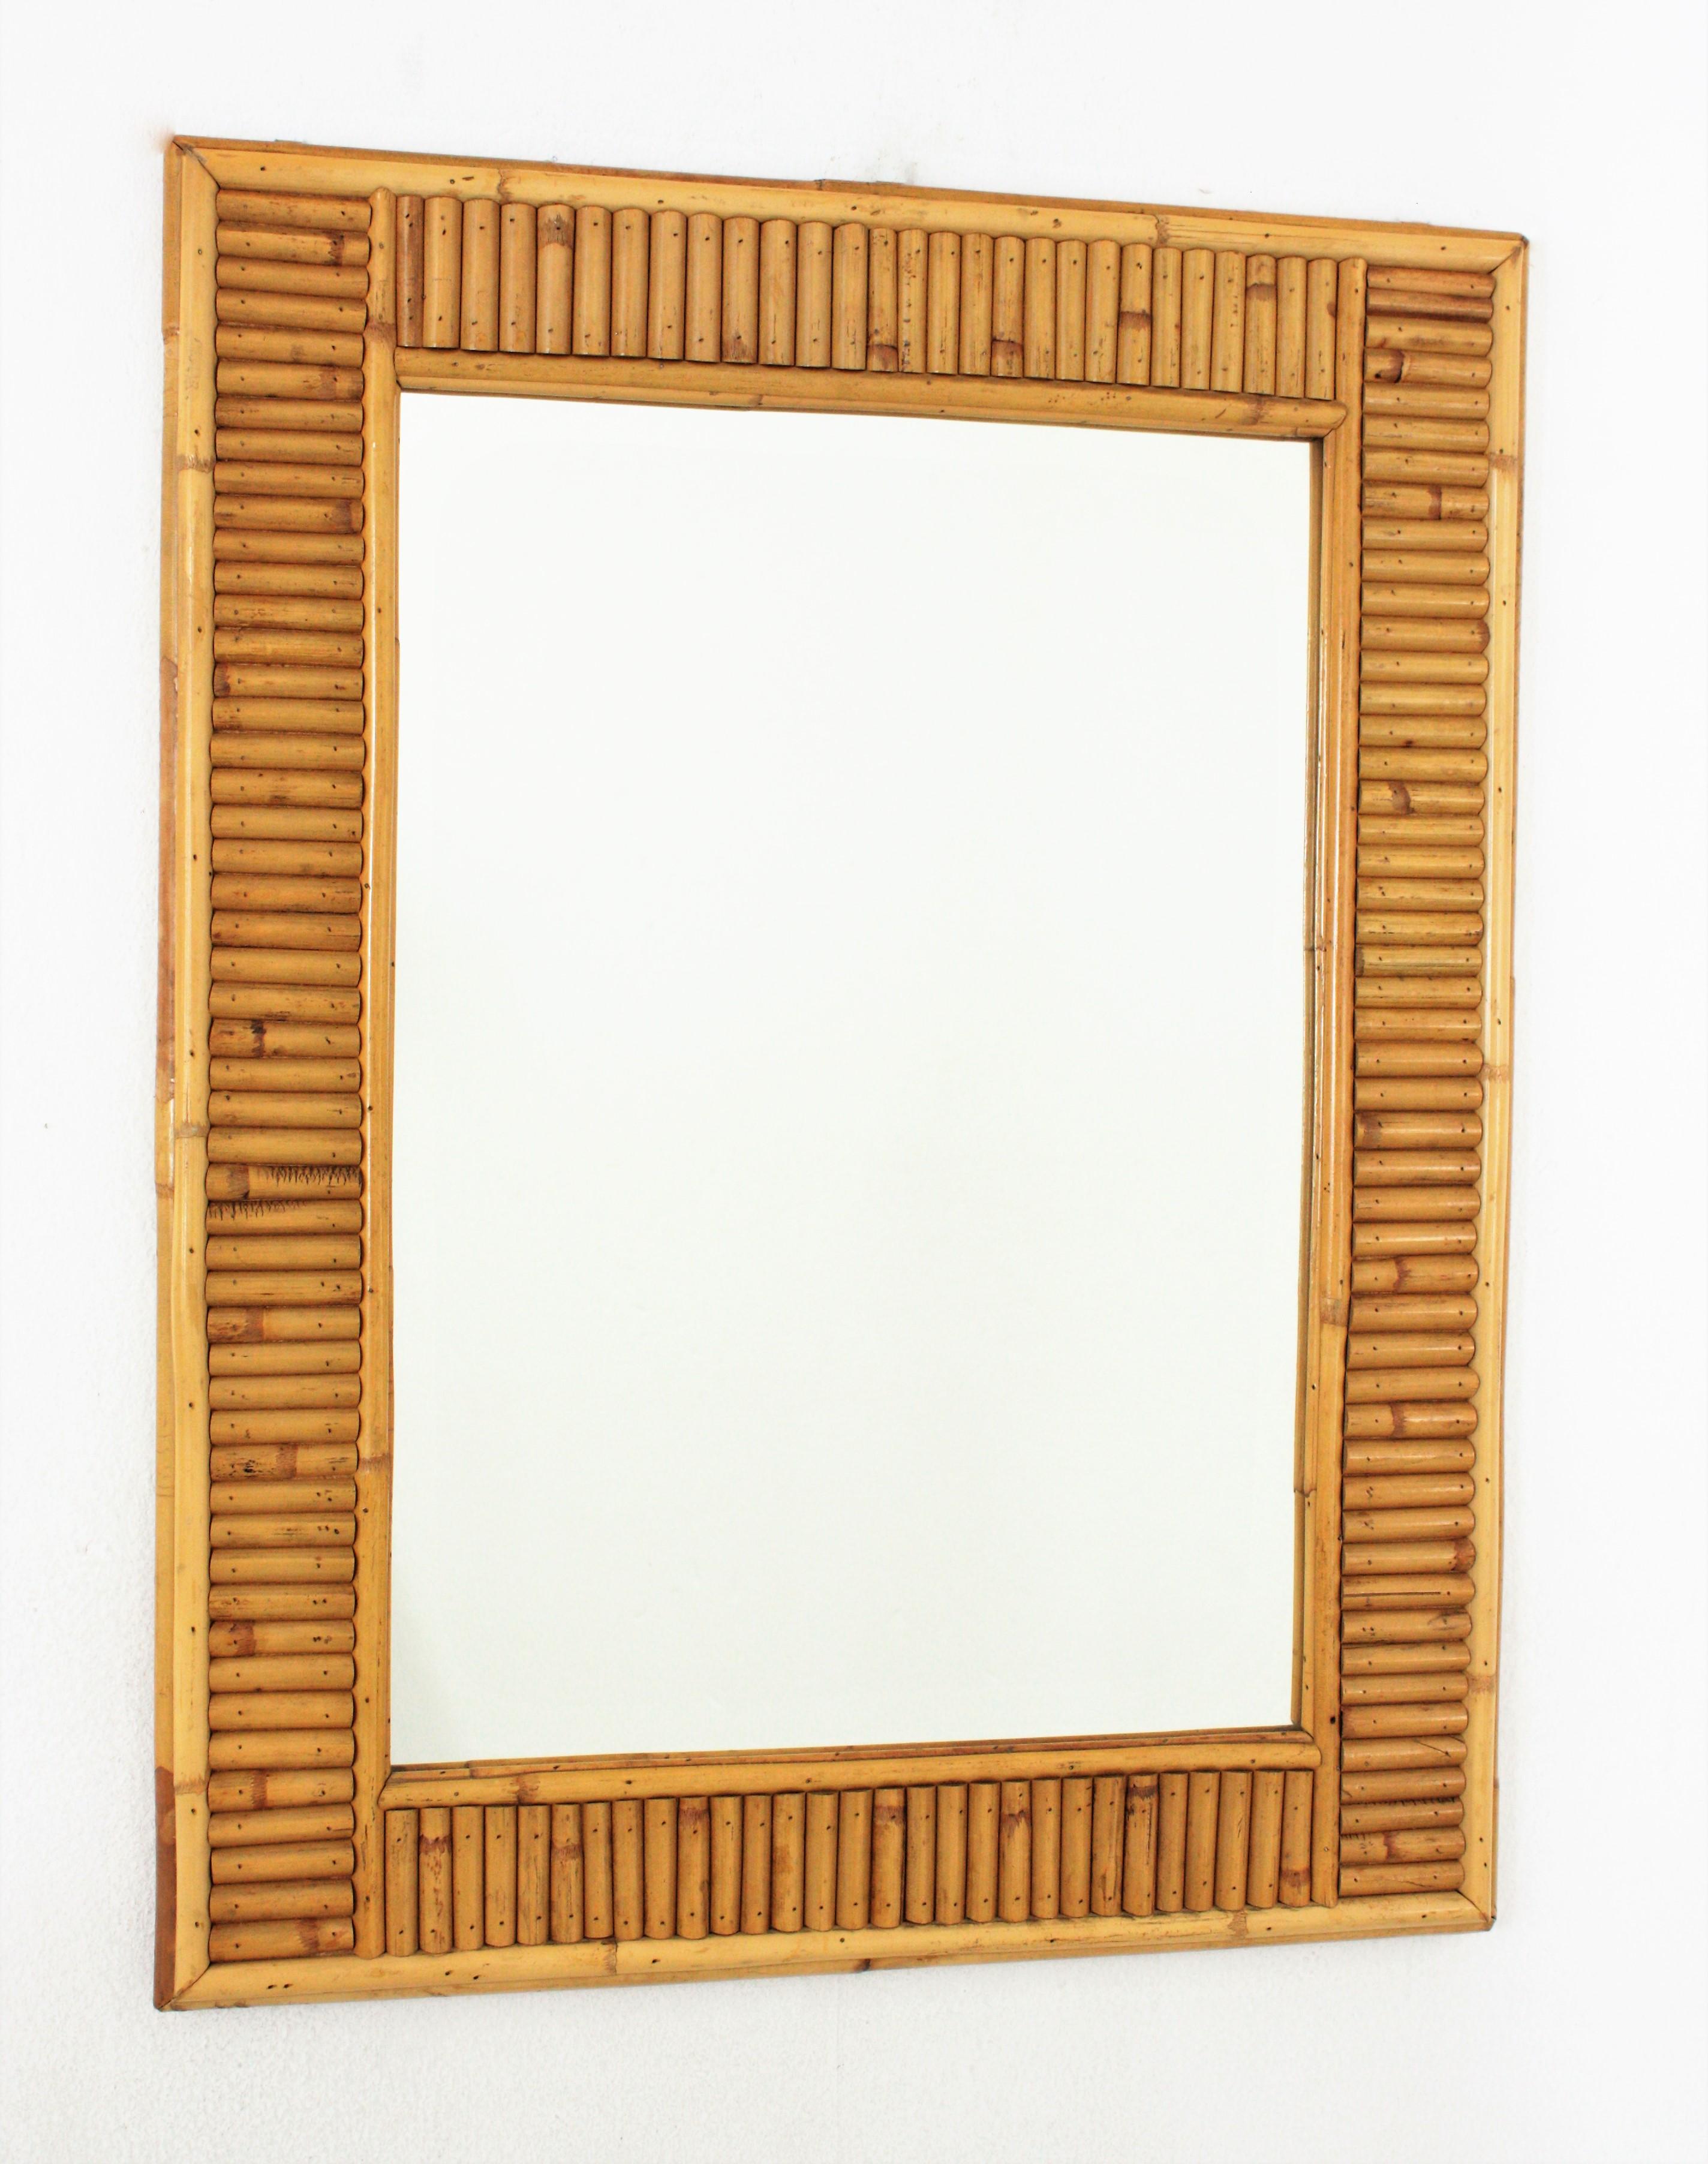 Miroir mural Midentury de designer italien, roseau fendu, bambou, rotin, Italie, années 1960.
Ce superbe miroir rectangulaire a été fabriqué à la main avec de la canne de bambou et du rotin. Son design combine des accents Midcentury et orientaux.
Il